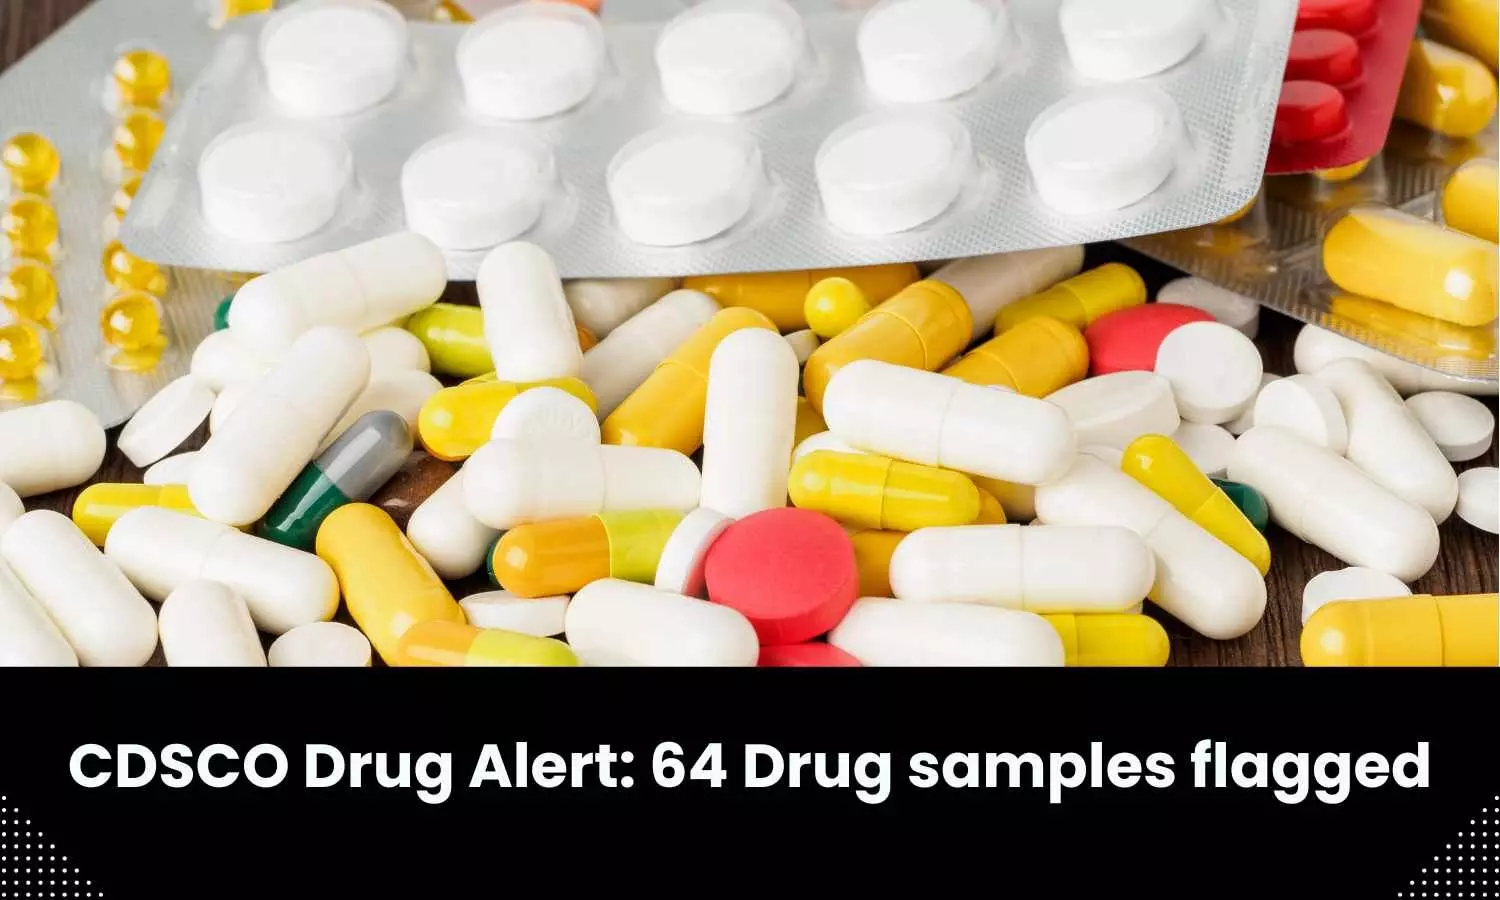 Drug Alert: CDSCO flags 64 drug samples including Aristos Monocef 500